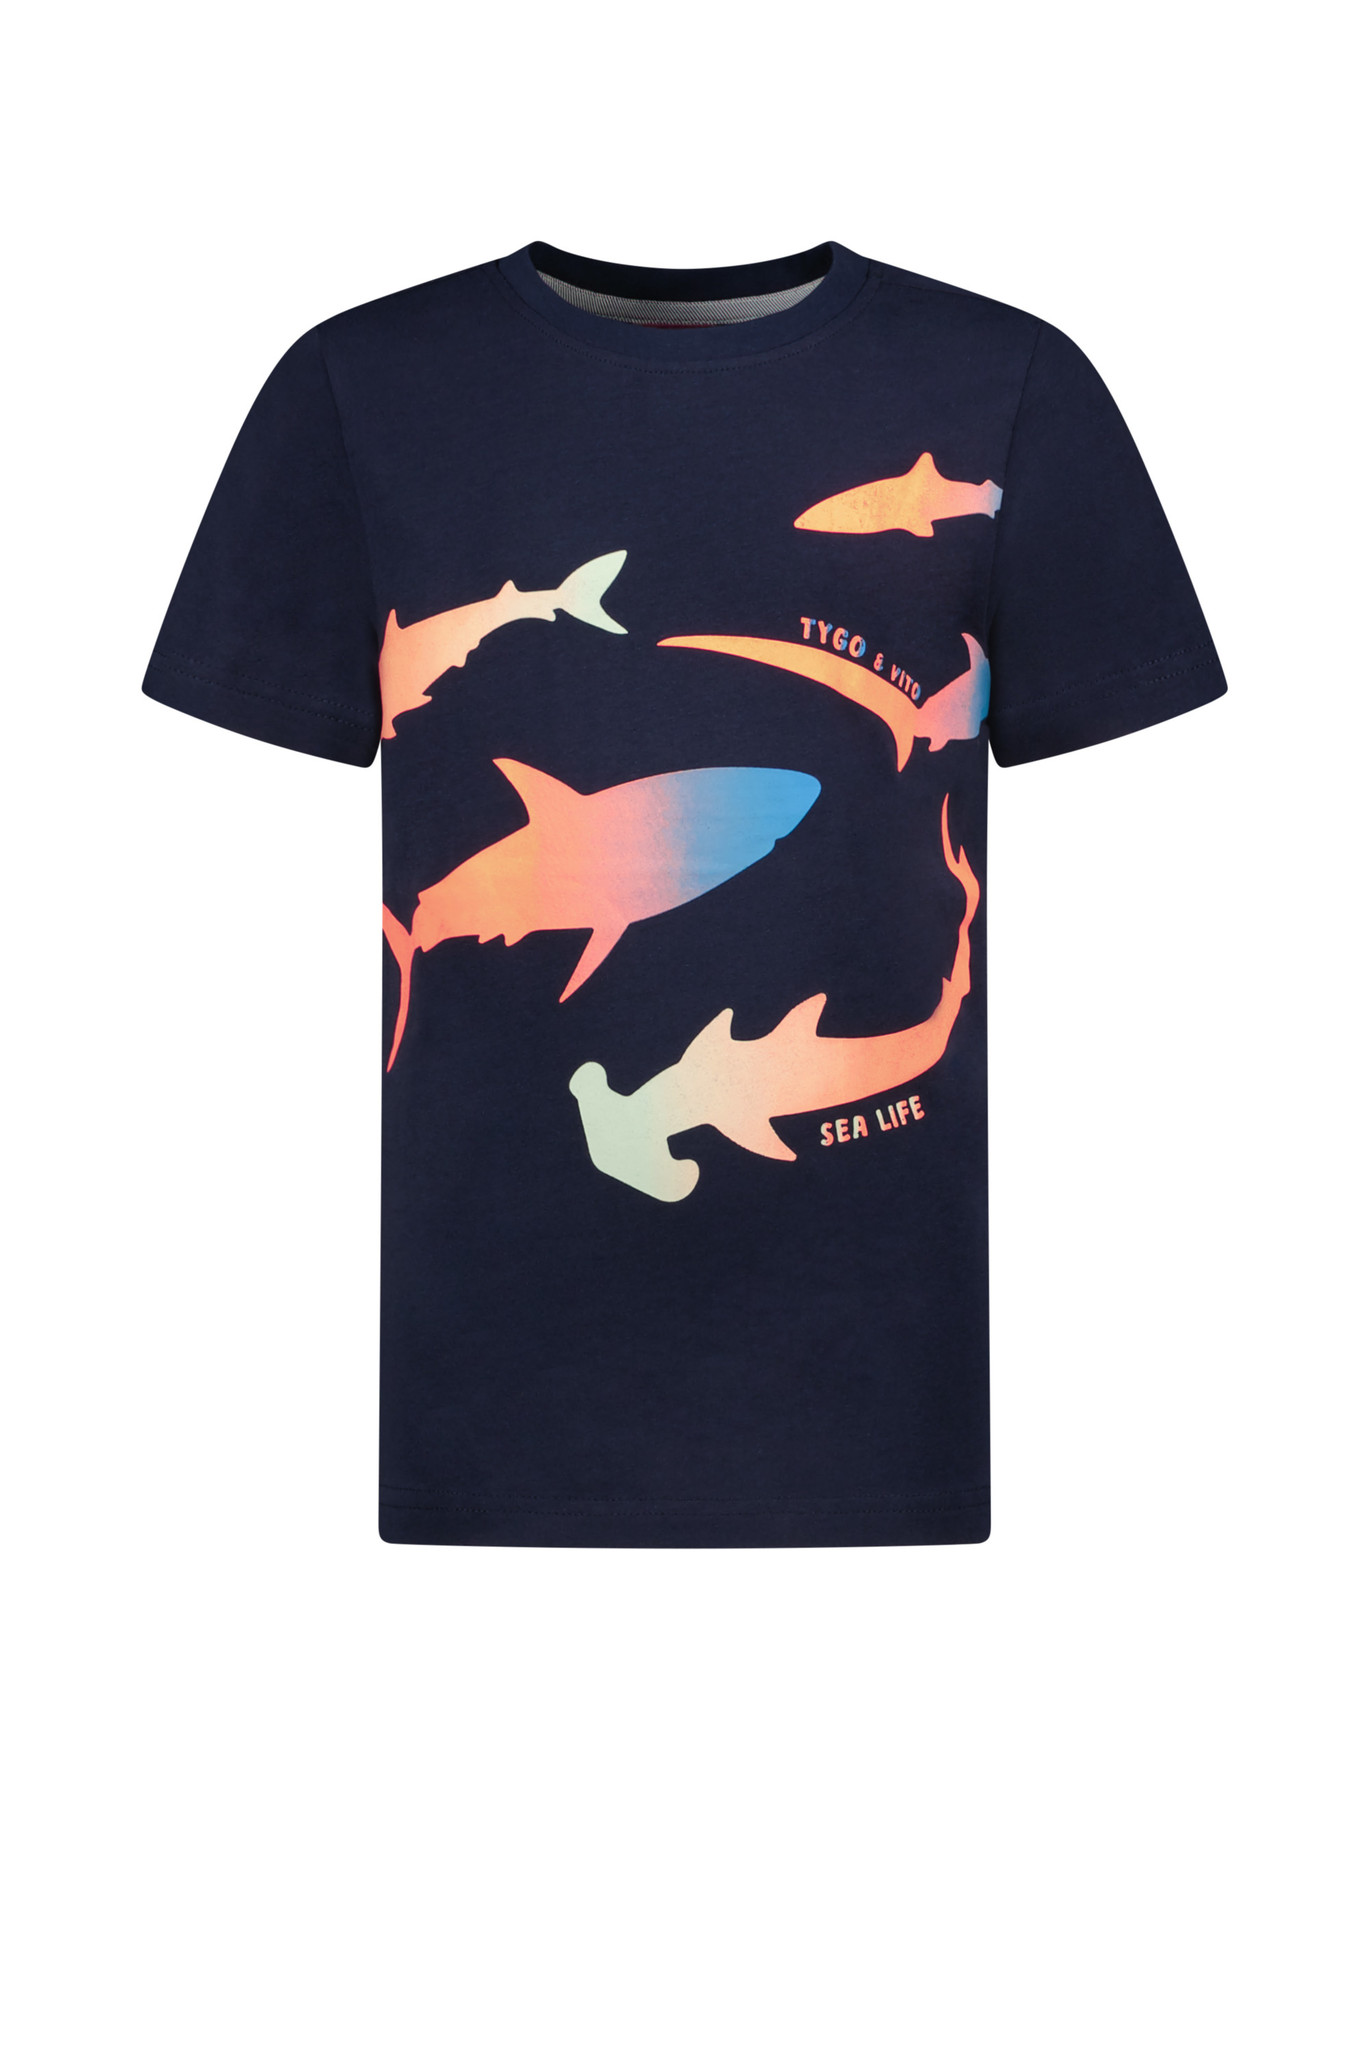 Tygo & Vito Jongens t-shirt sealife - Navy blauw